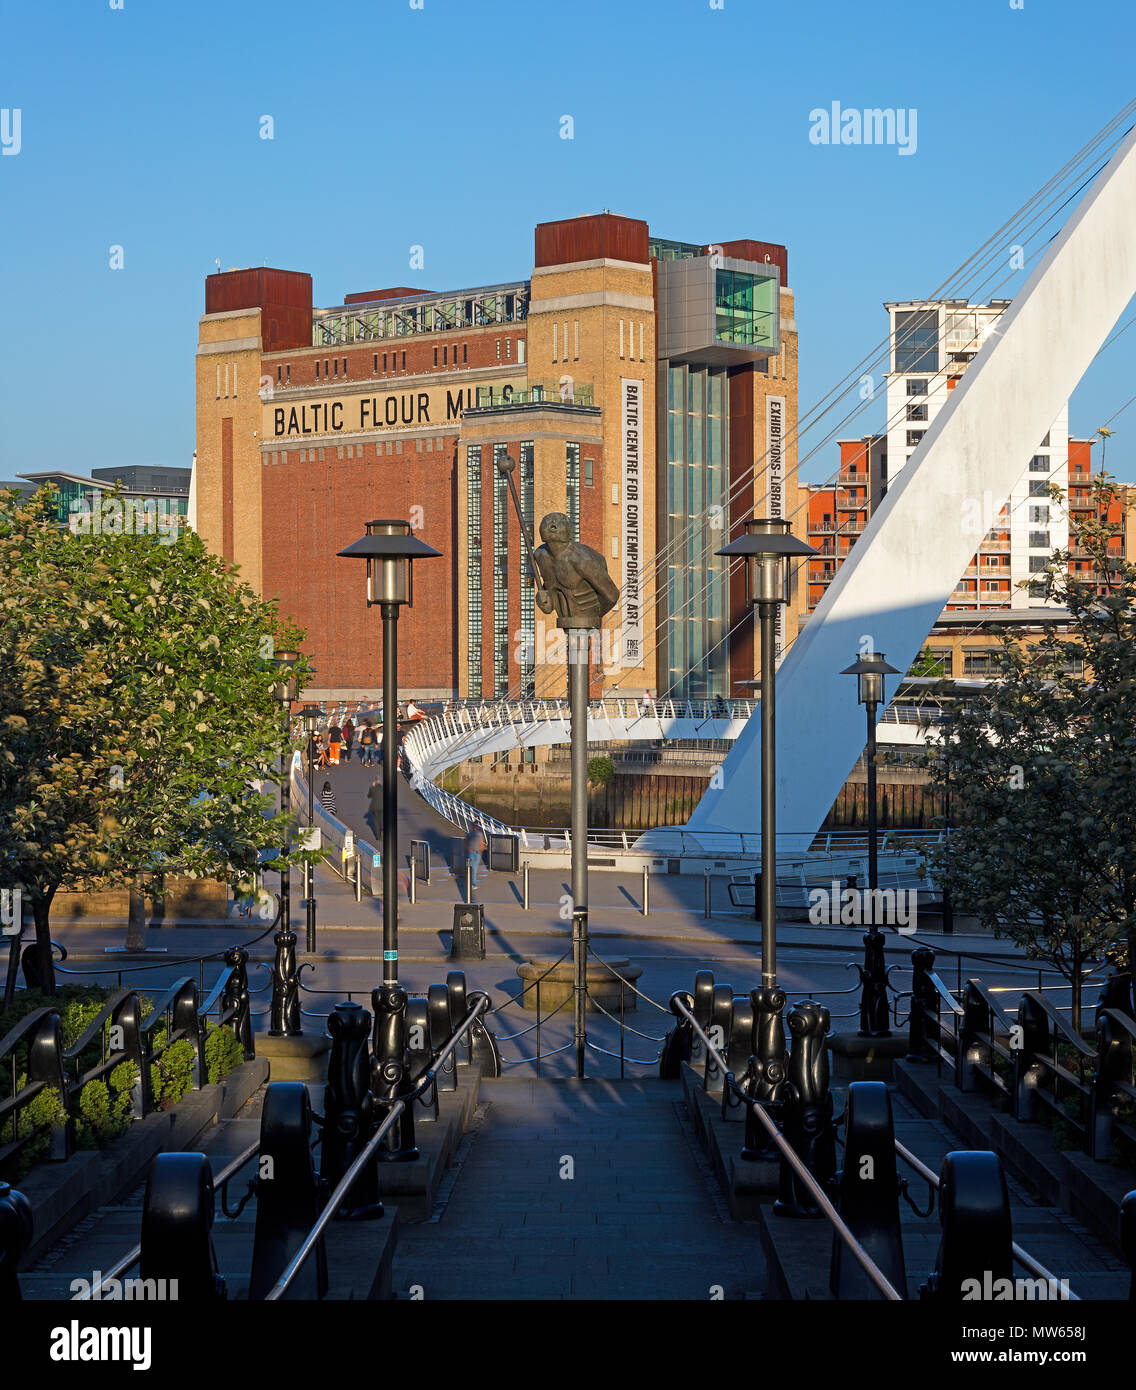 Tagsüber in der Sonne des baltischen Zentrum für Zeitgenössische Kunst, Gateshead, Tyne and Wear, England, Vereinigtes Königreich Stockfoto